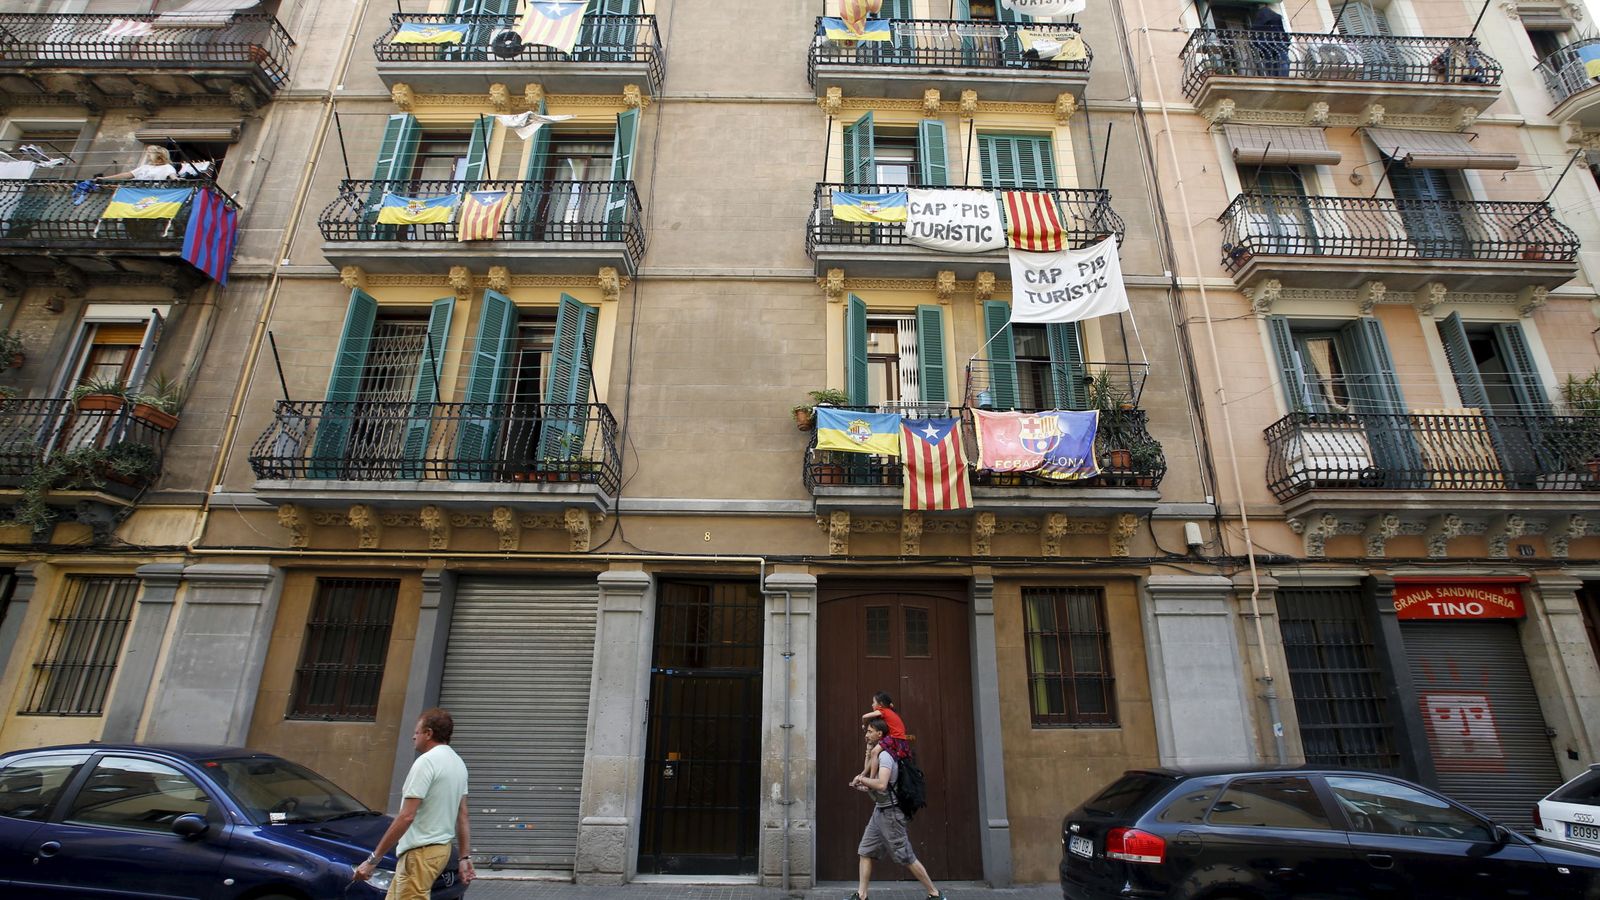 Economistas y académicos detrás del mayor entramado de pisos turísticos ilegales en Barcelona